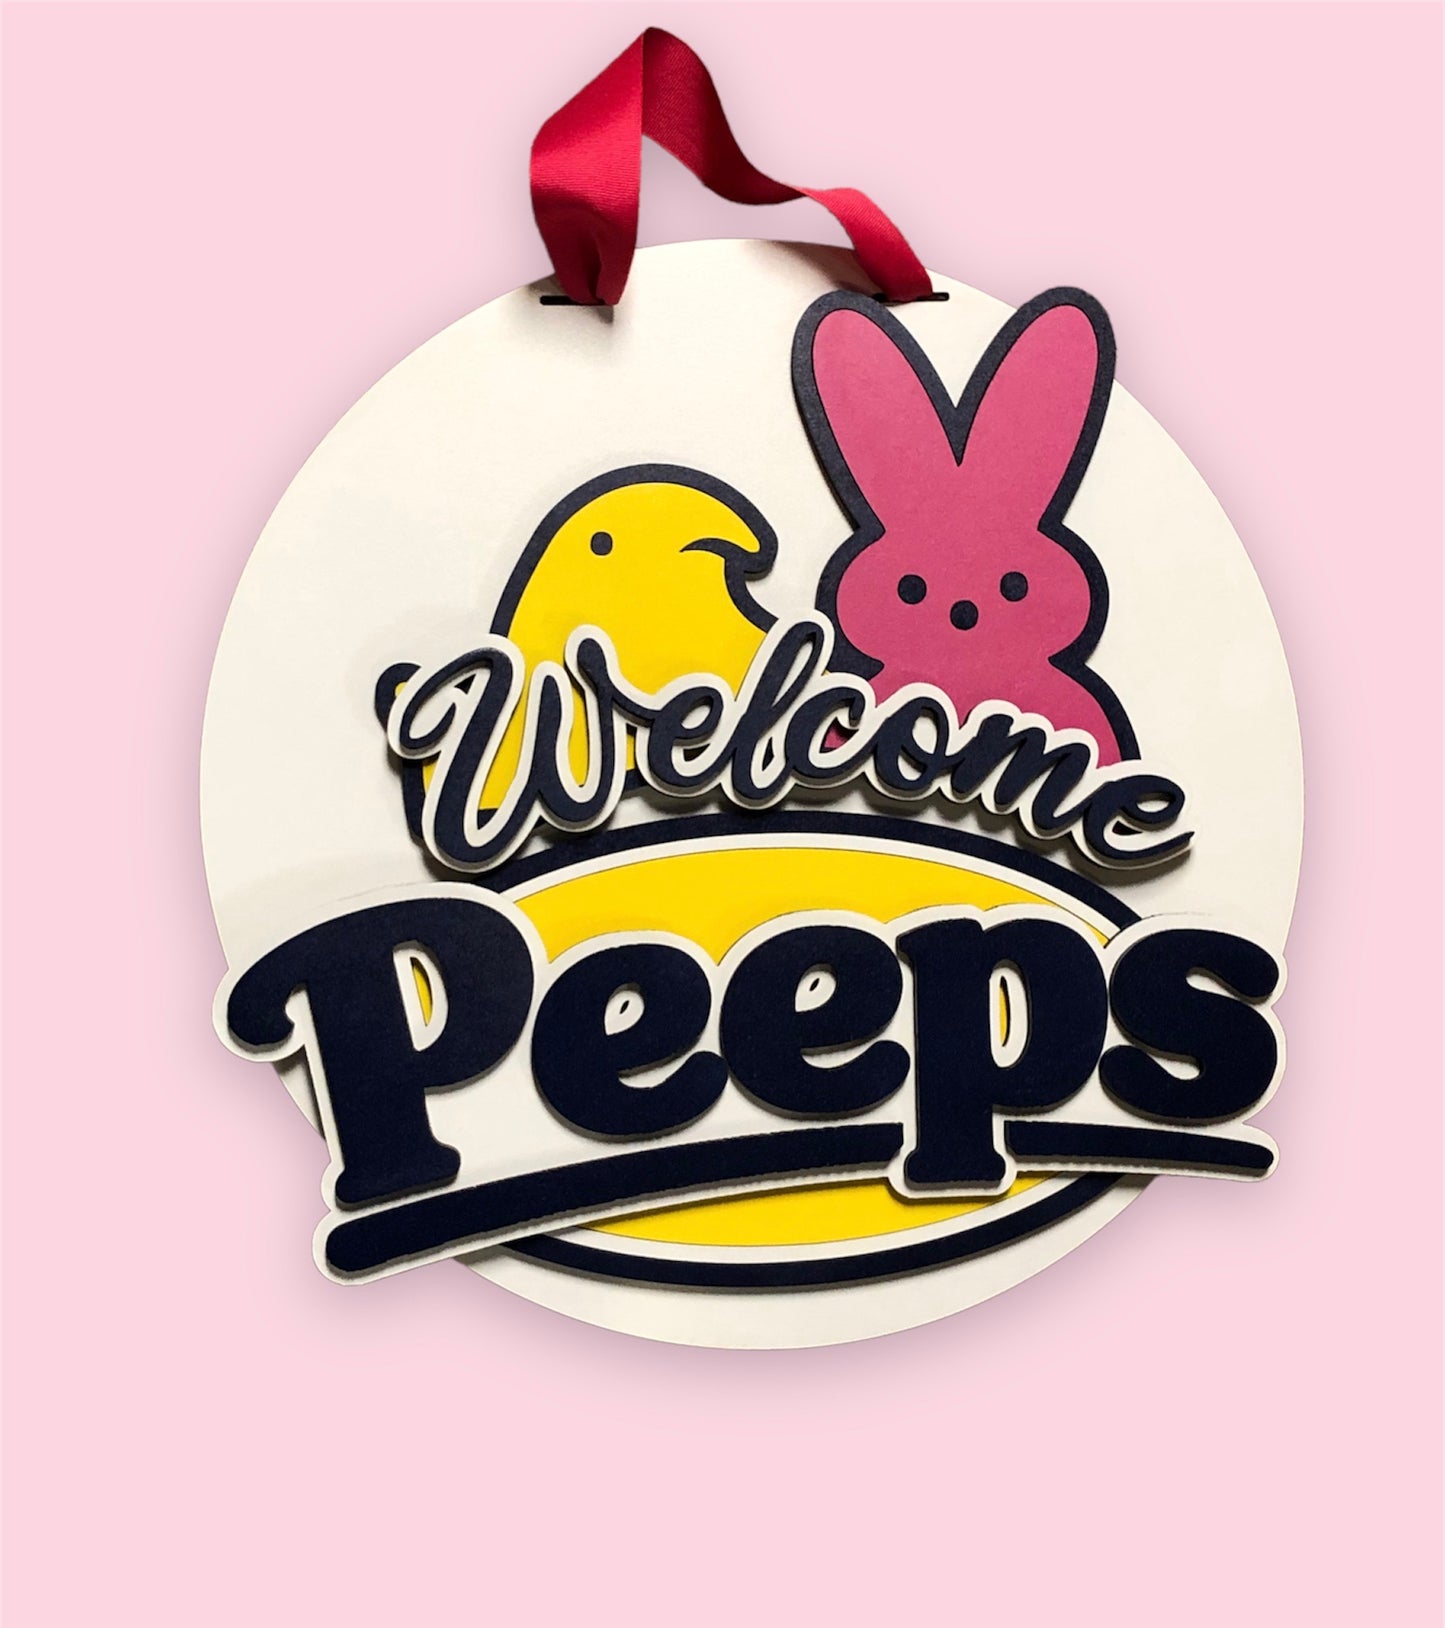 Welcome Peeps Door Hanger